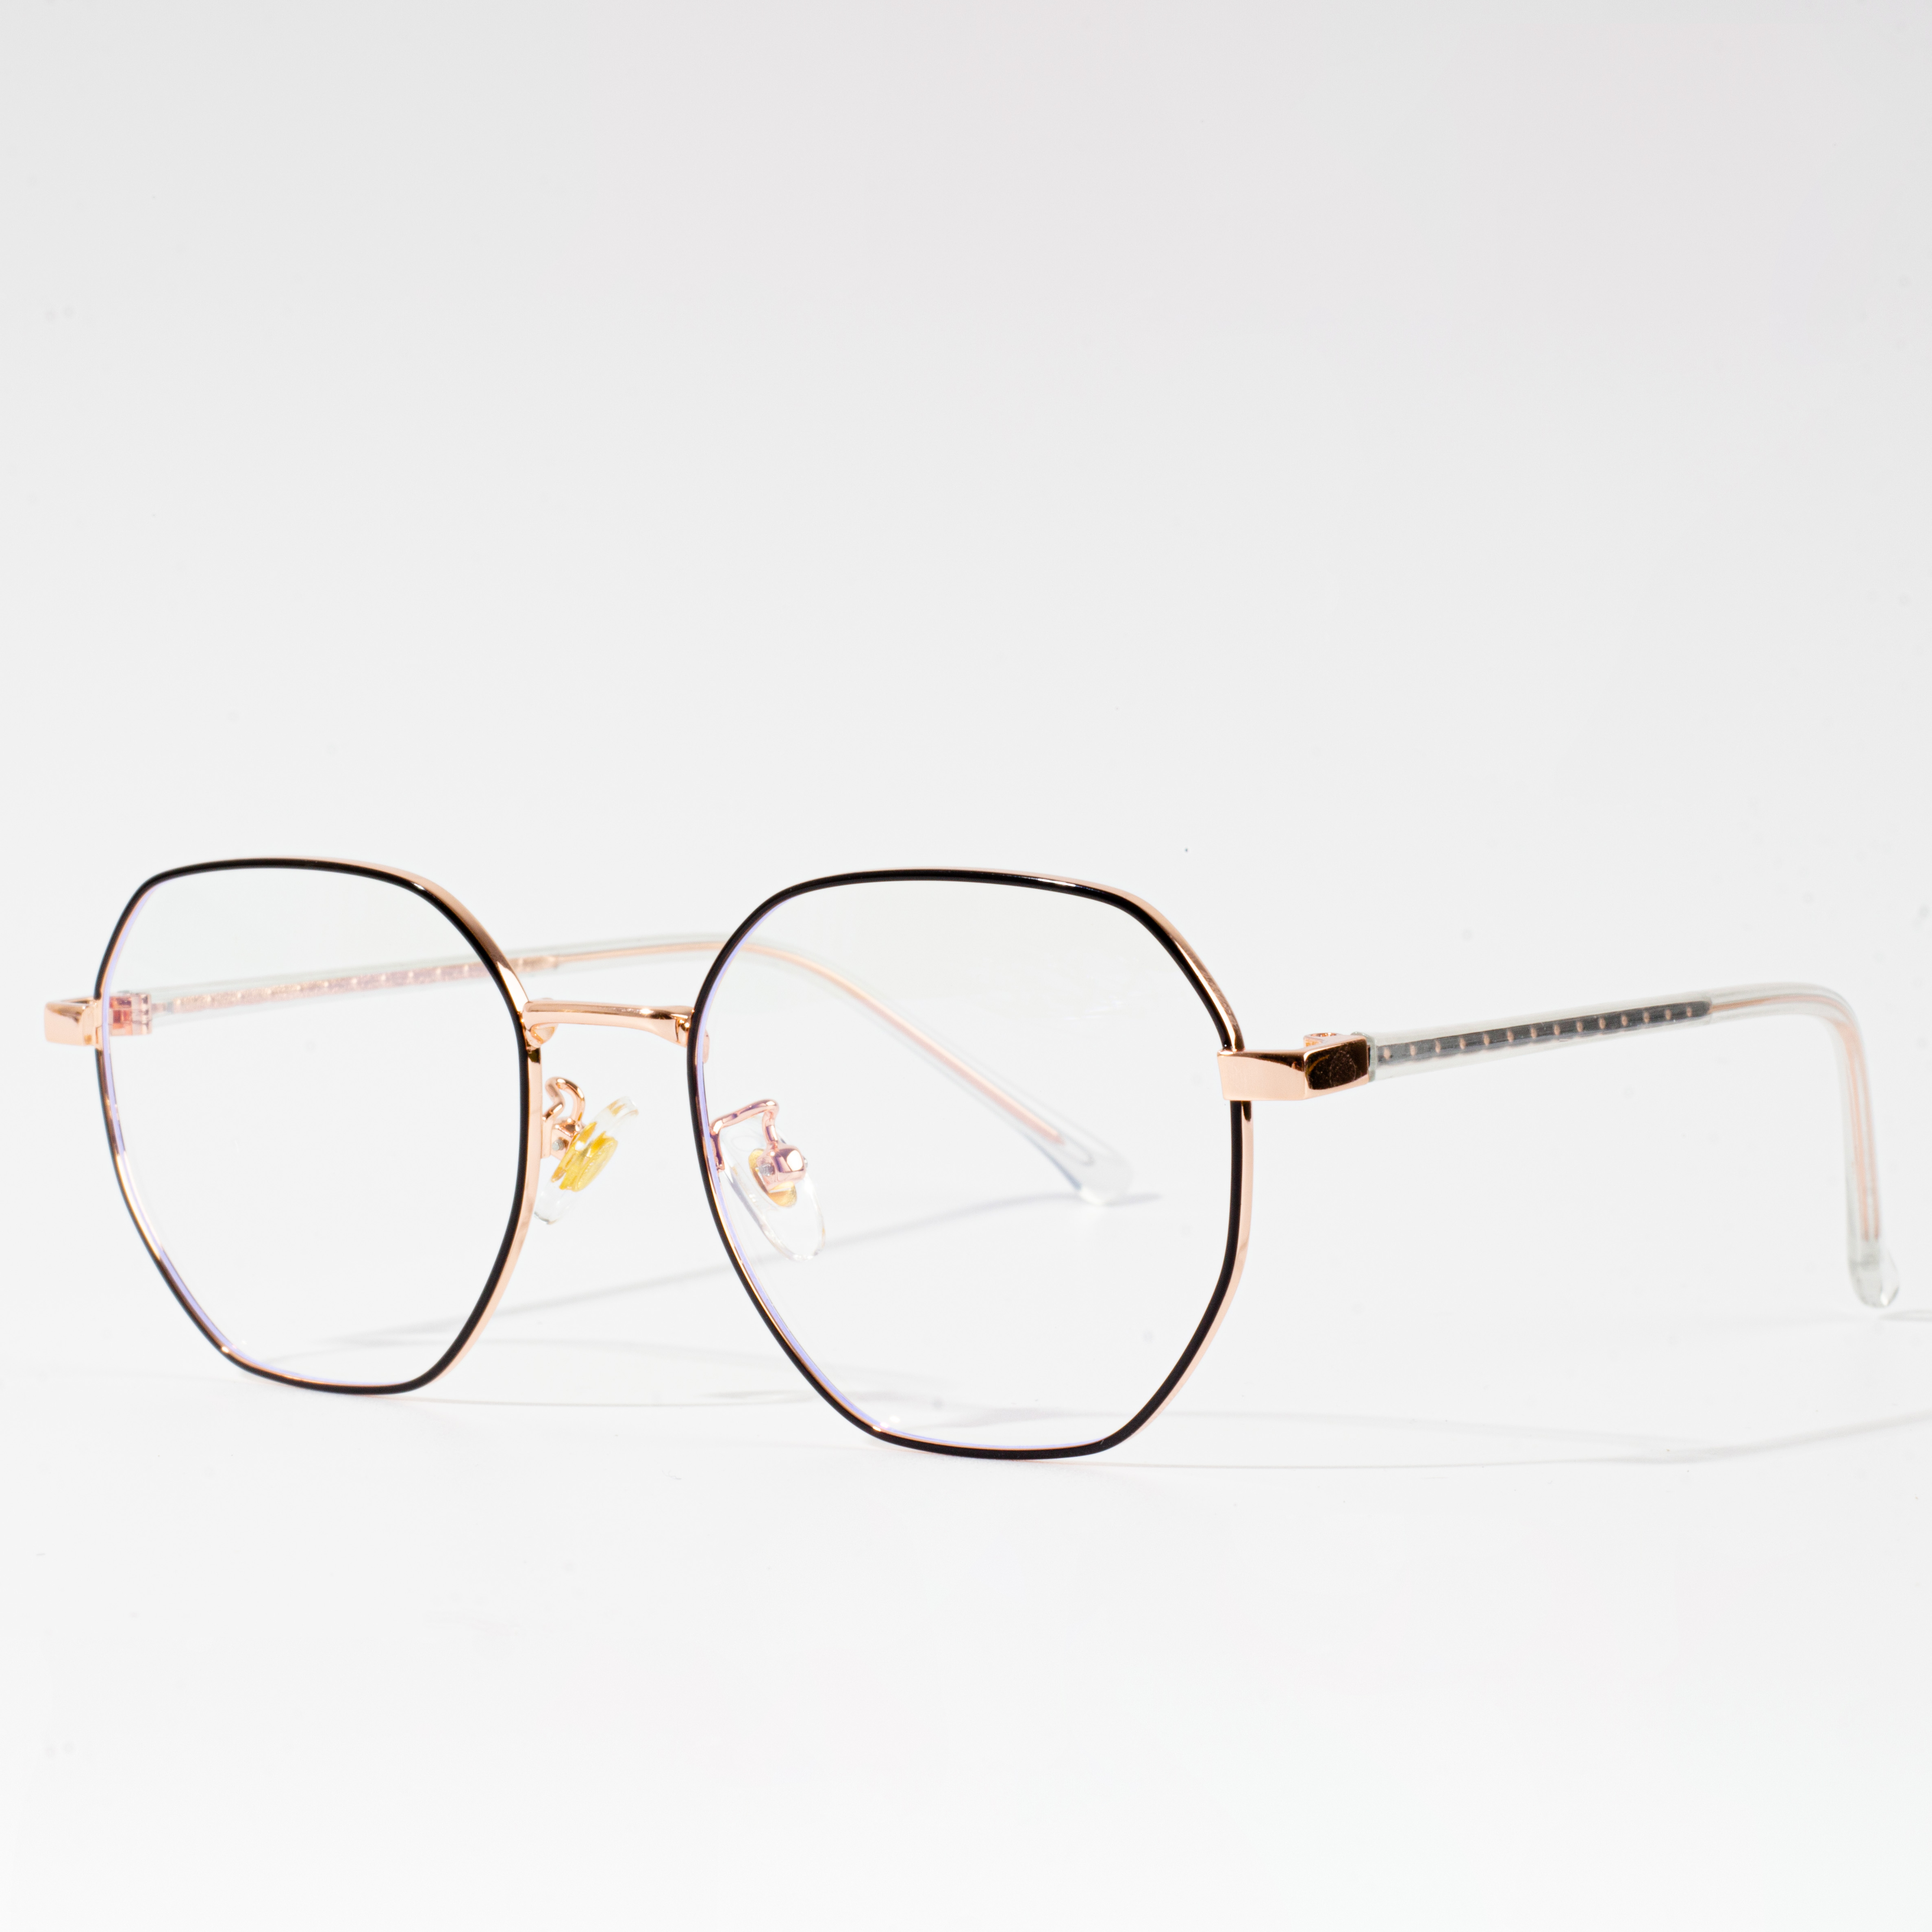 frame kacamata mahal